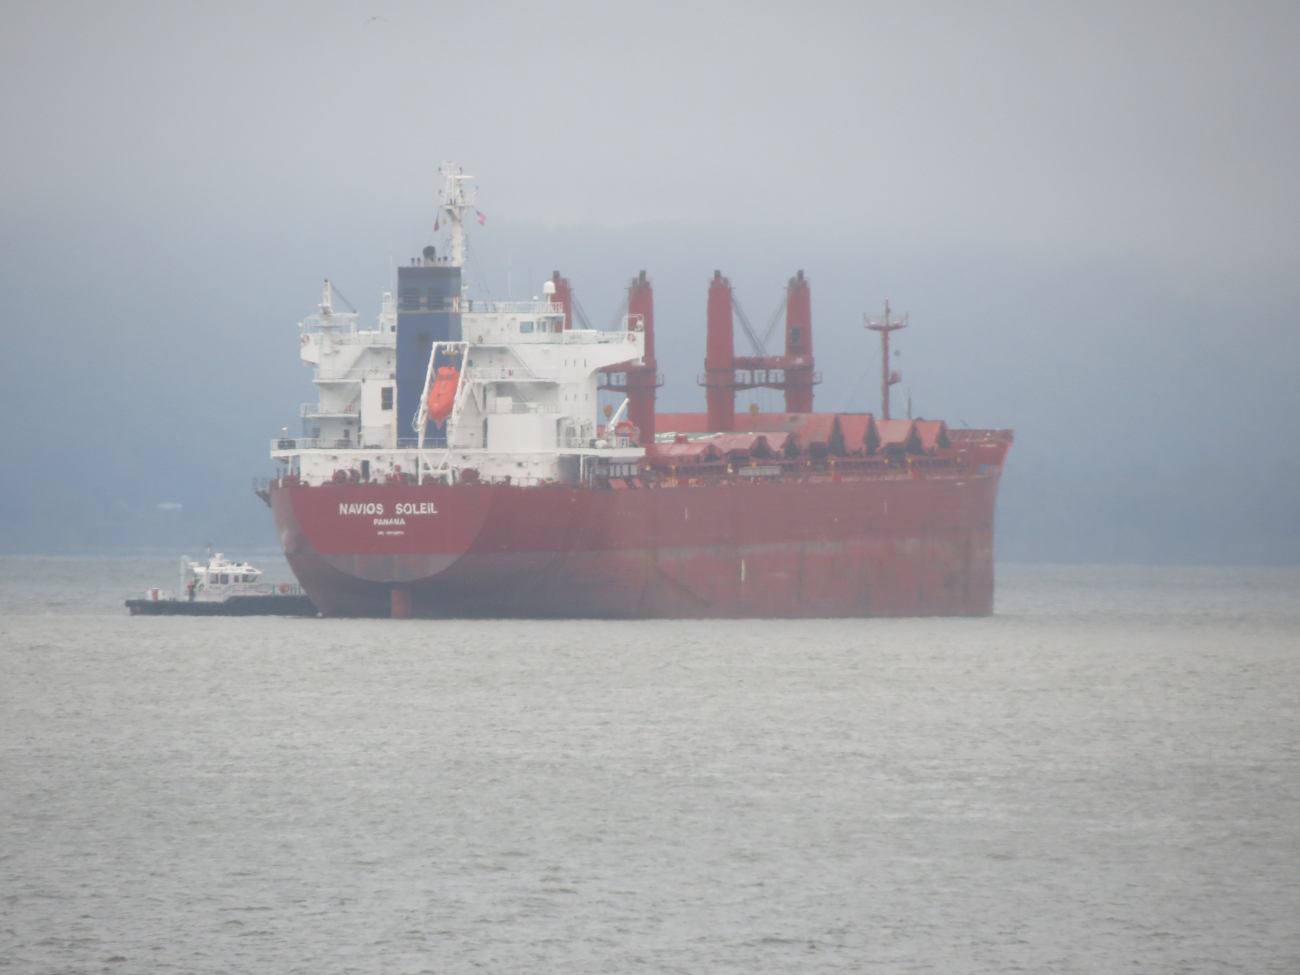 Bulk carrier NAVIOS SOLEIL anchored in the Columbia River near Astoria